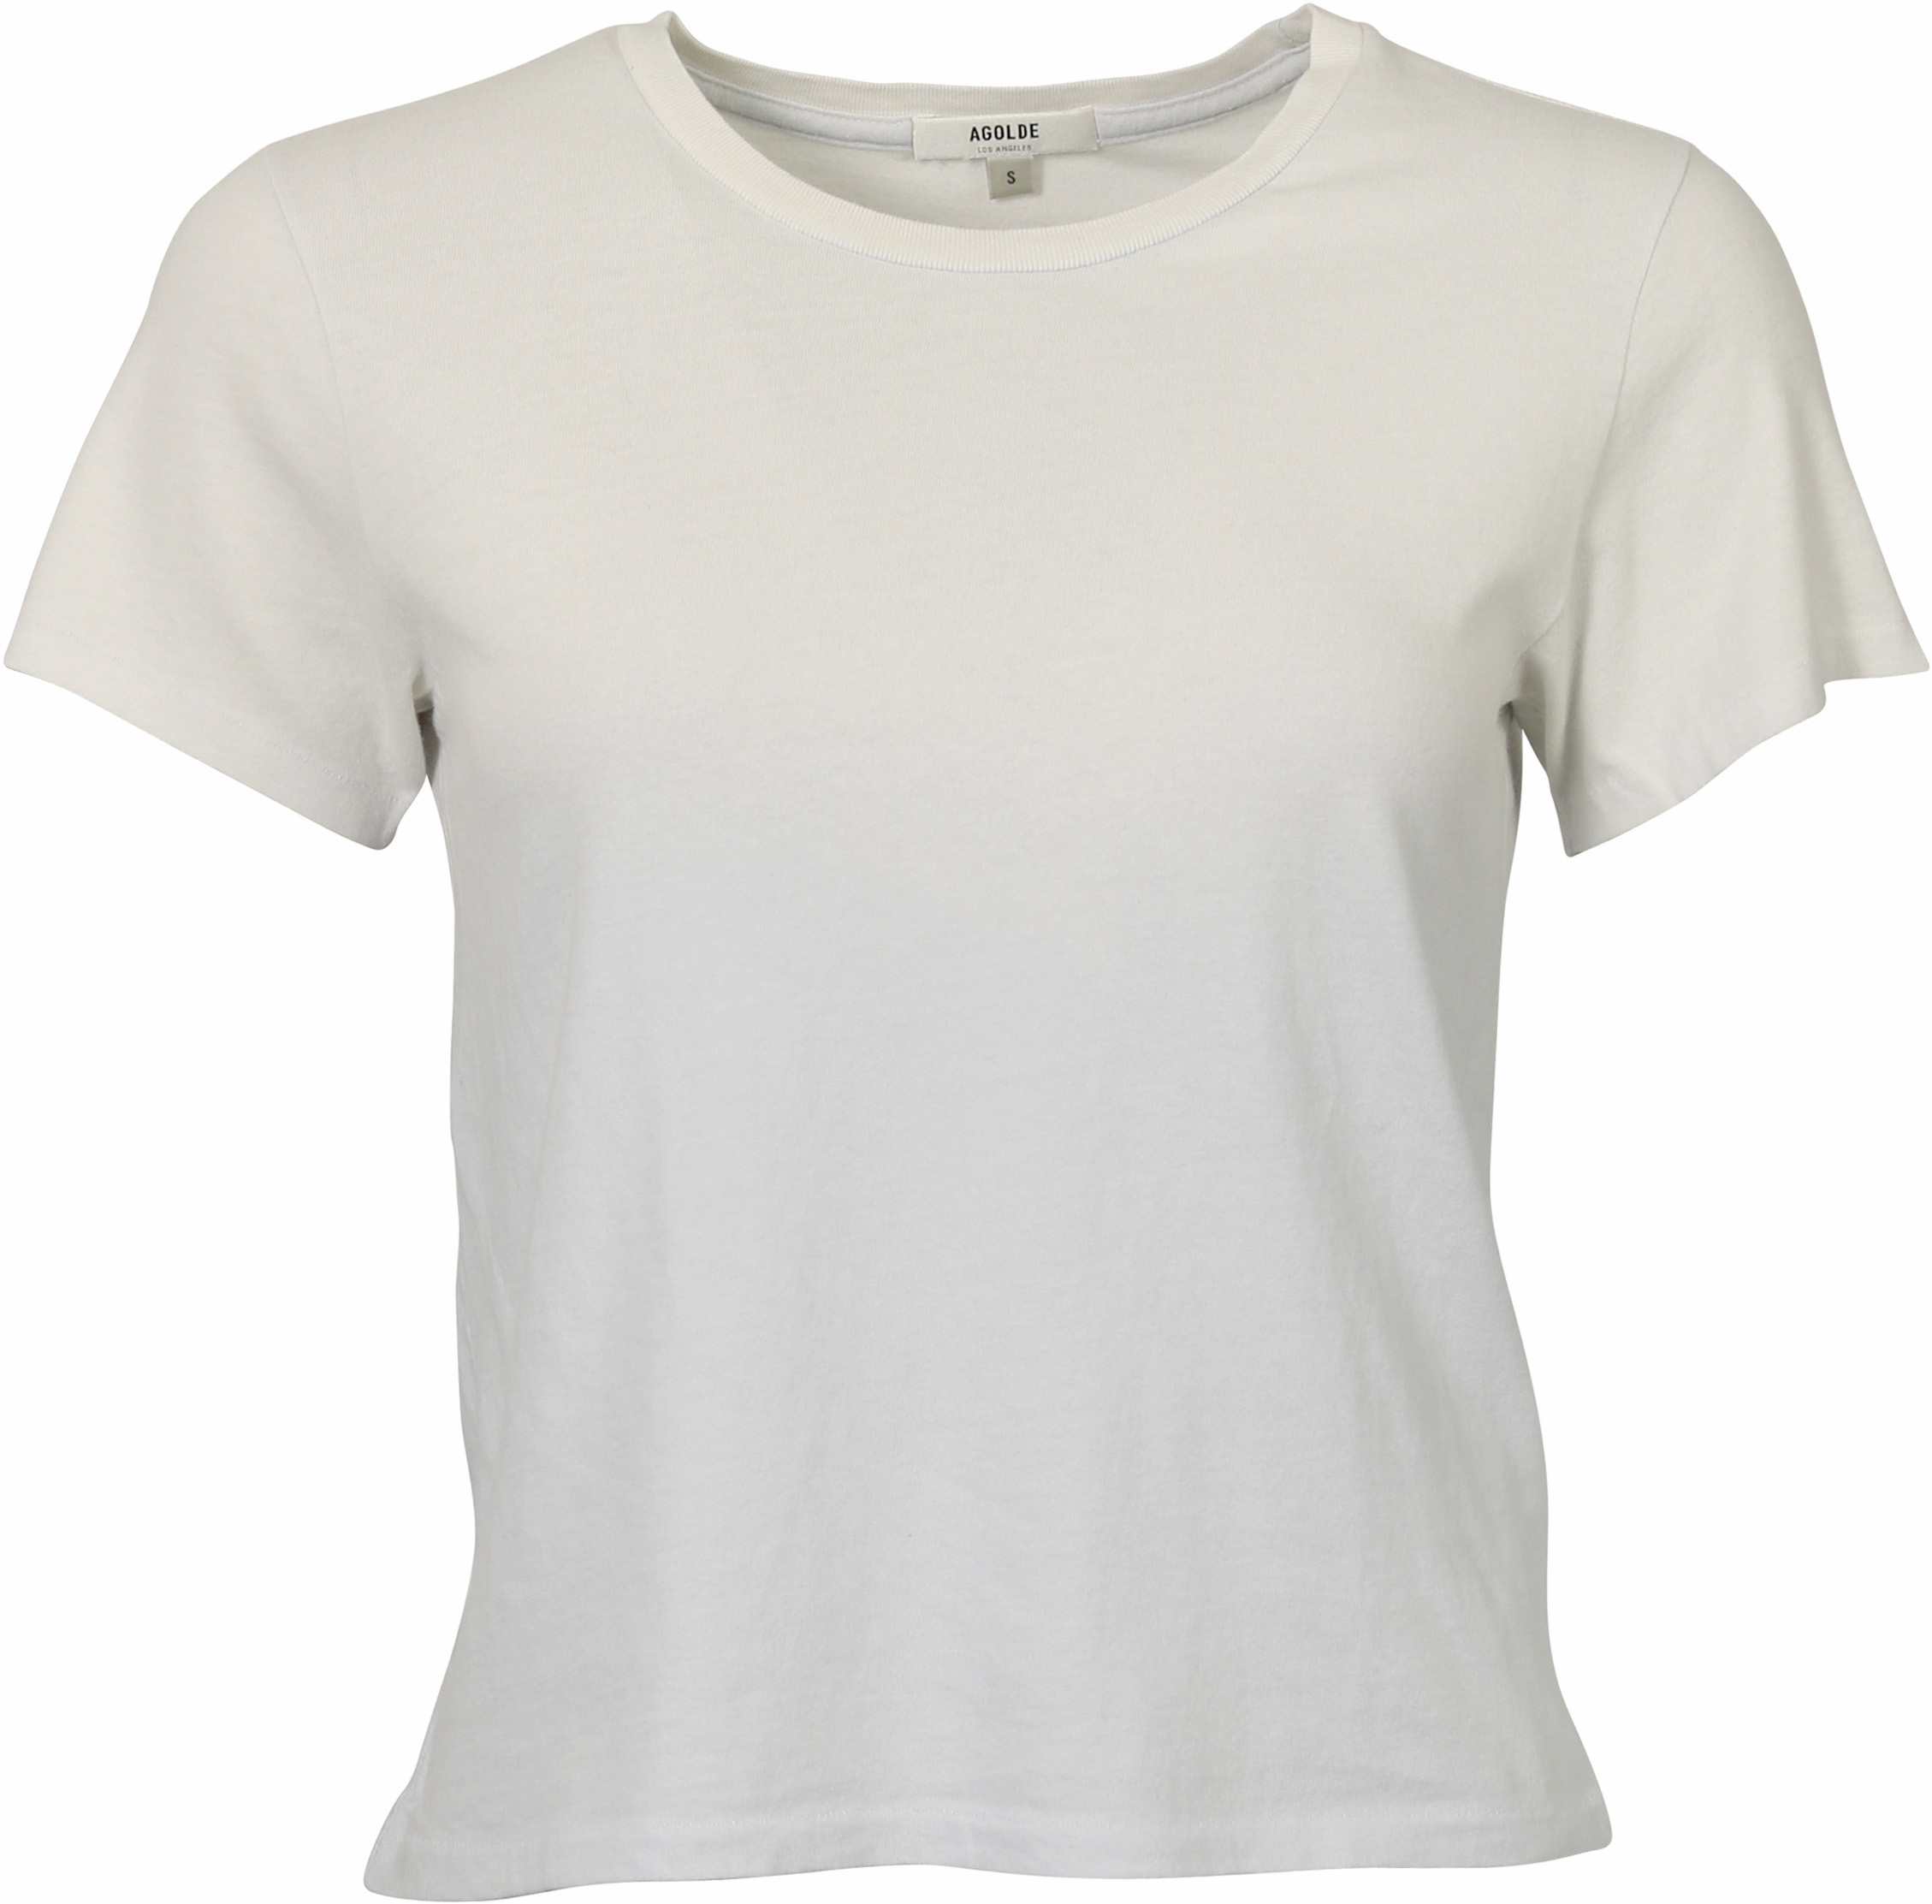 Agolde Boxy T-Shirt Linda Lightblue Degraded